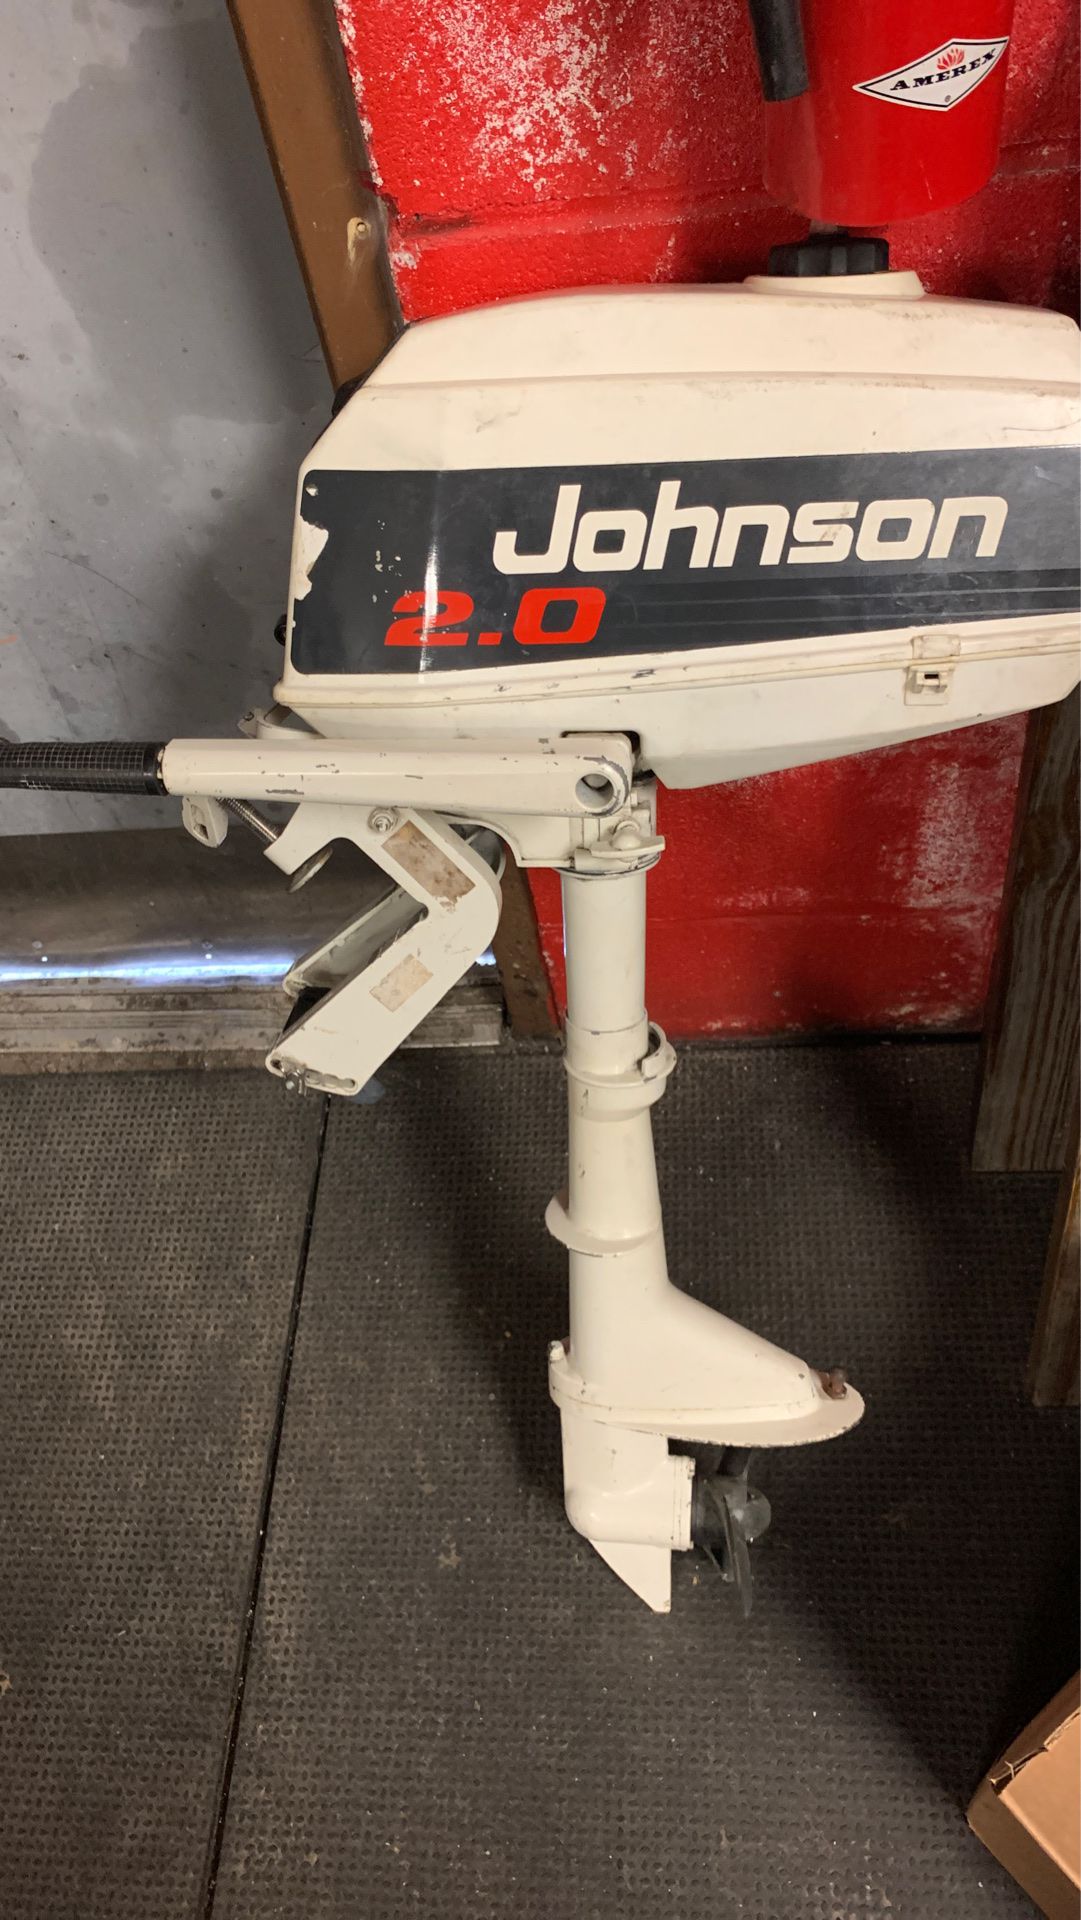 Johnson 2.0 boat motor